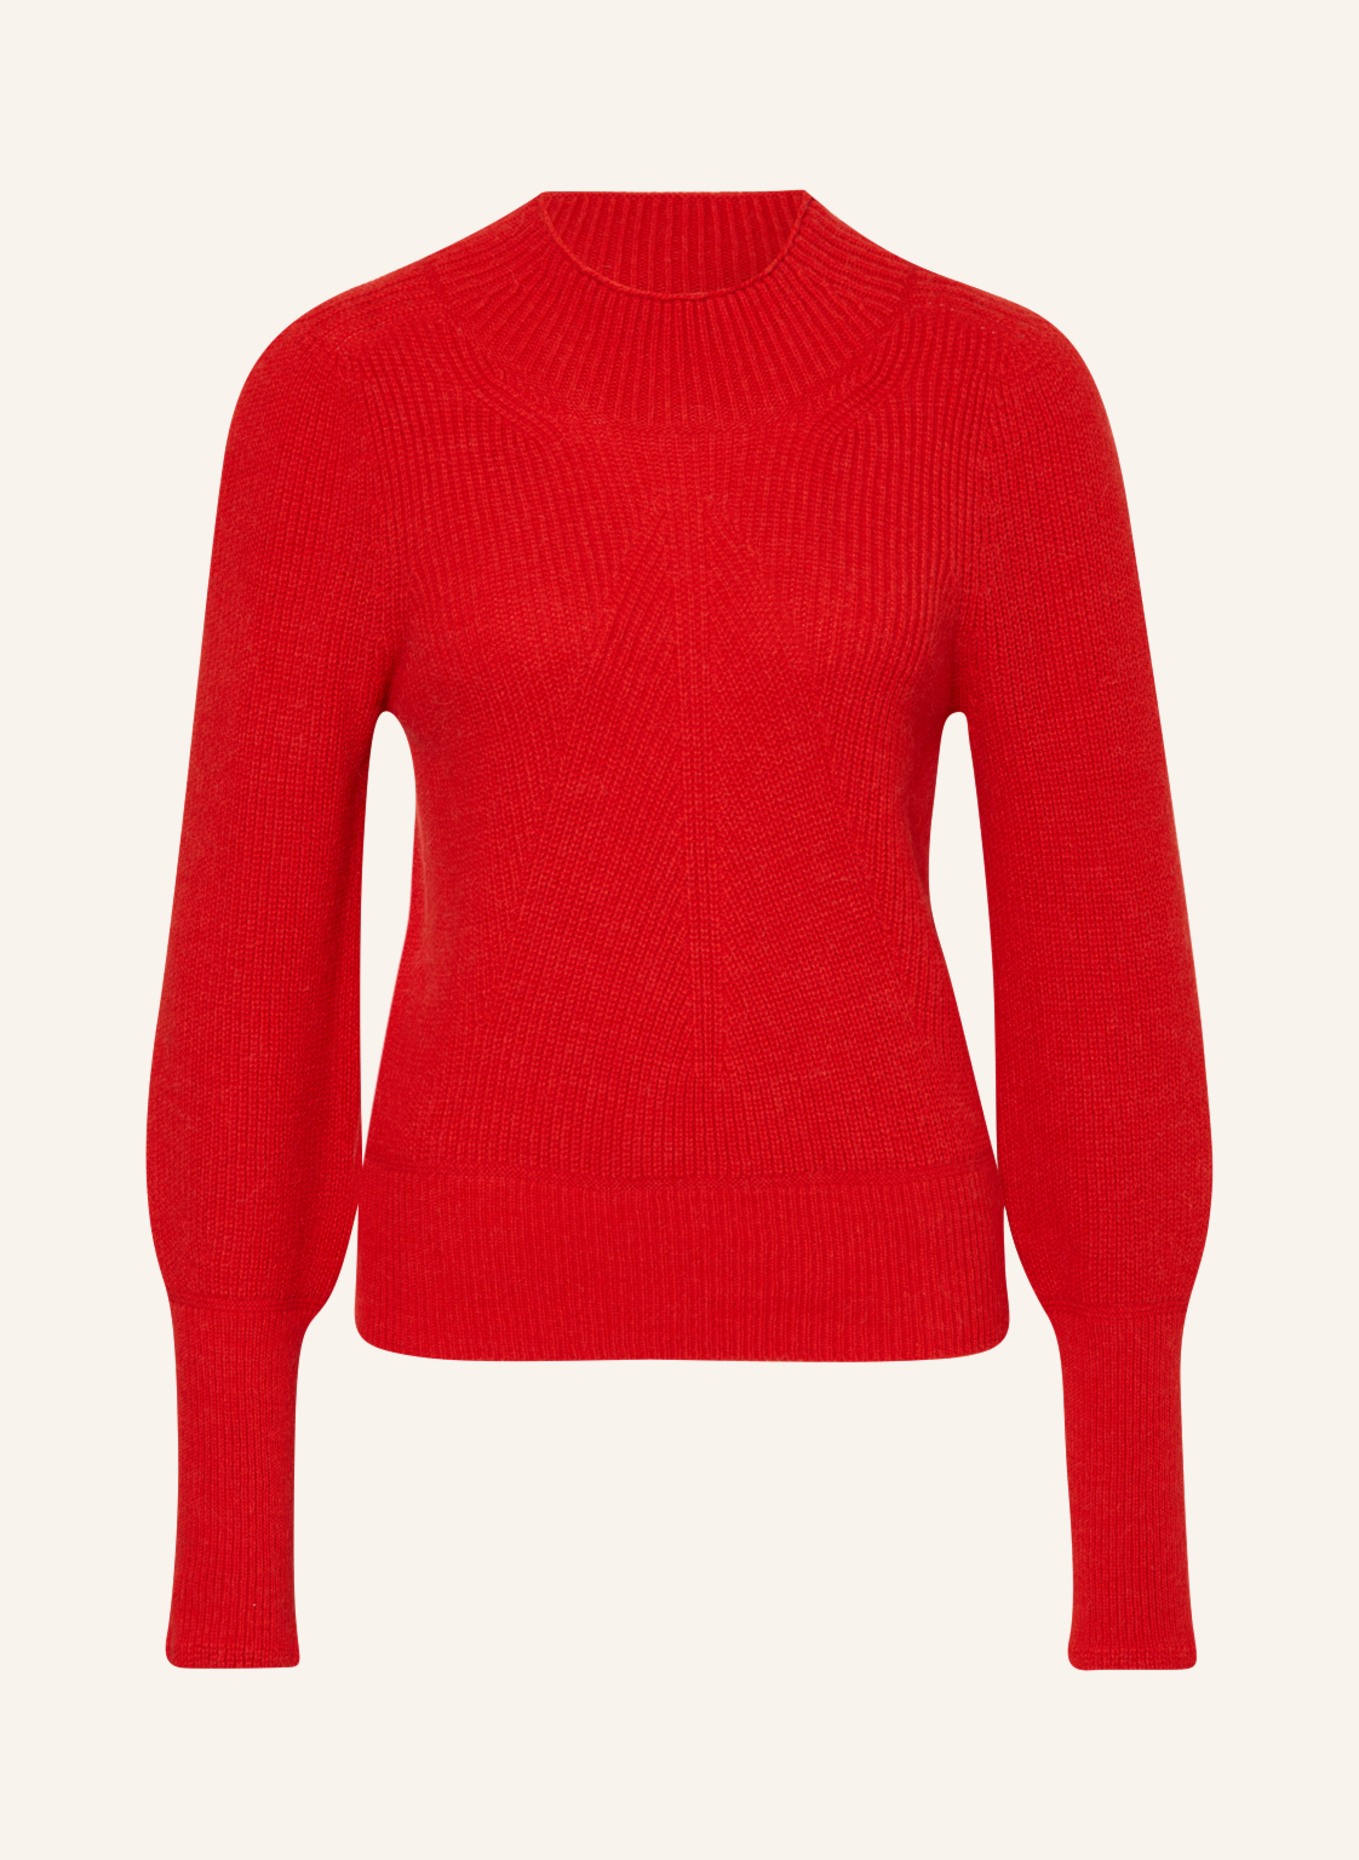 MARC CAIN Pullover mit Alpaka, Farbe: 270 bright fire red (Bild 1)